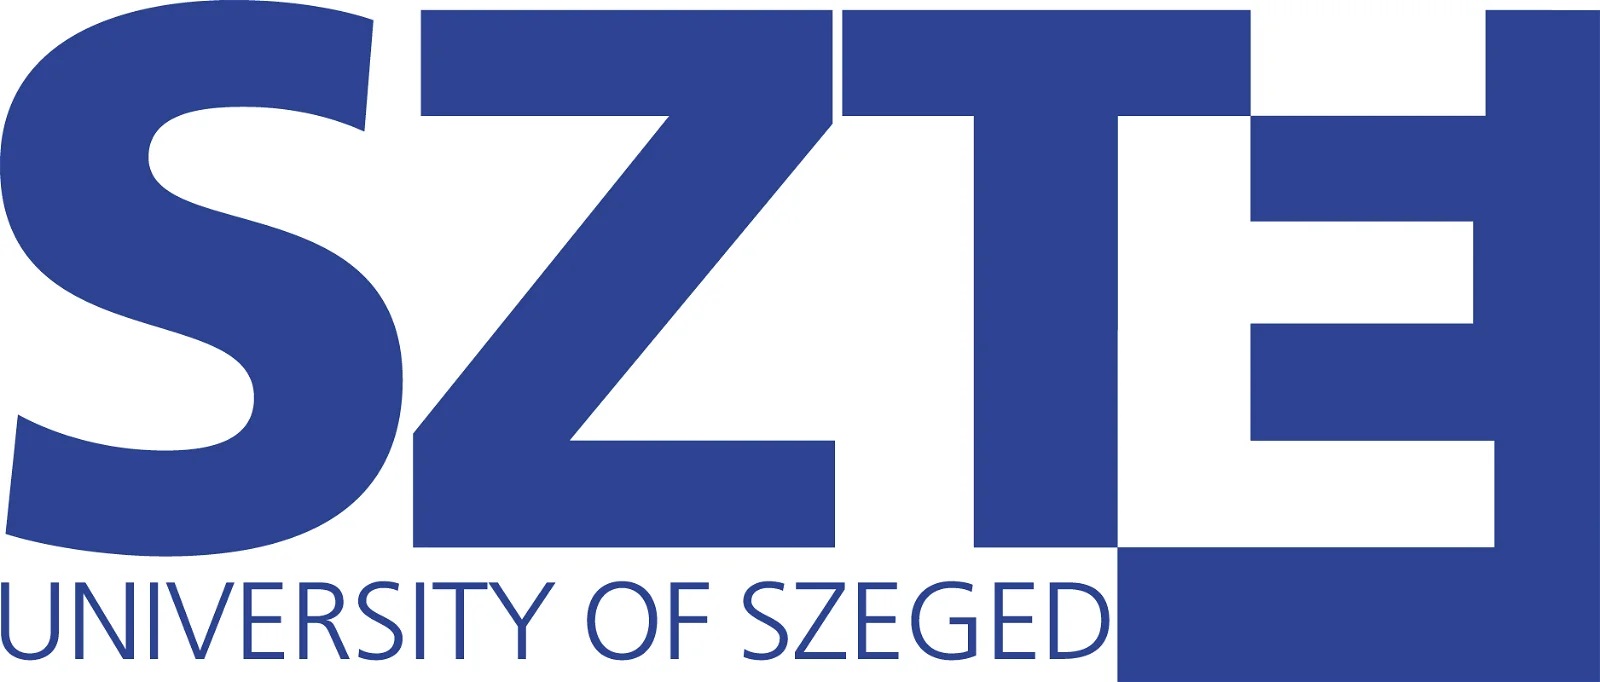 The University of Szeged